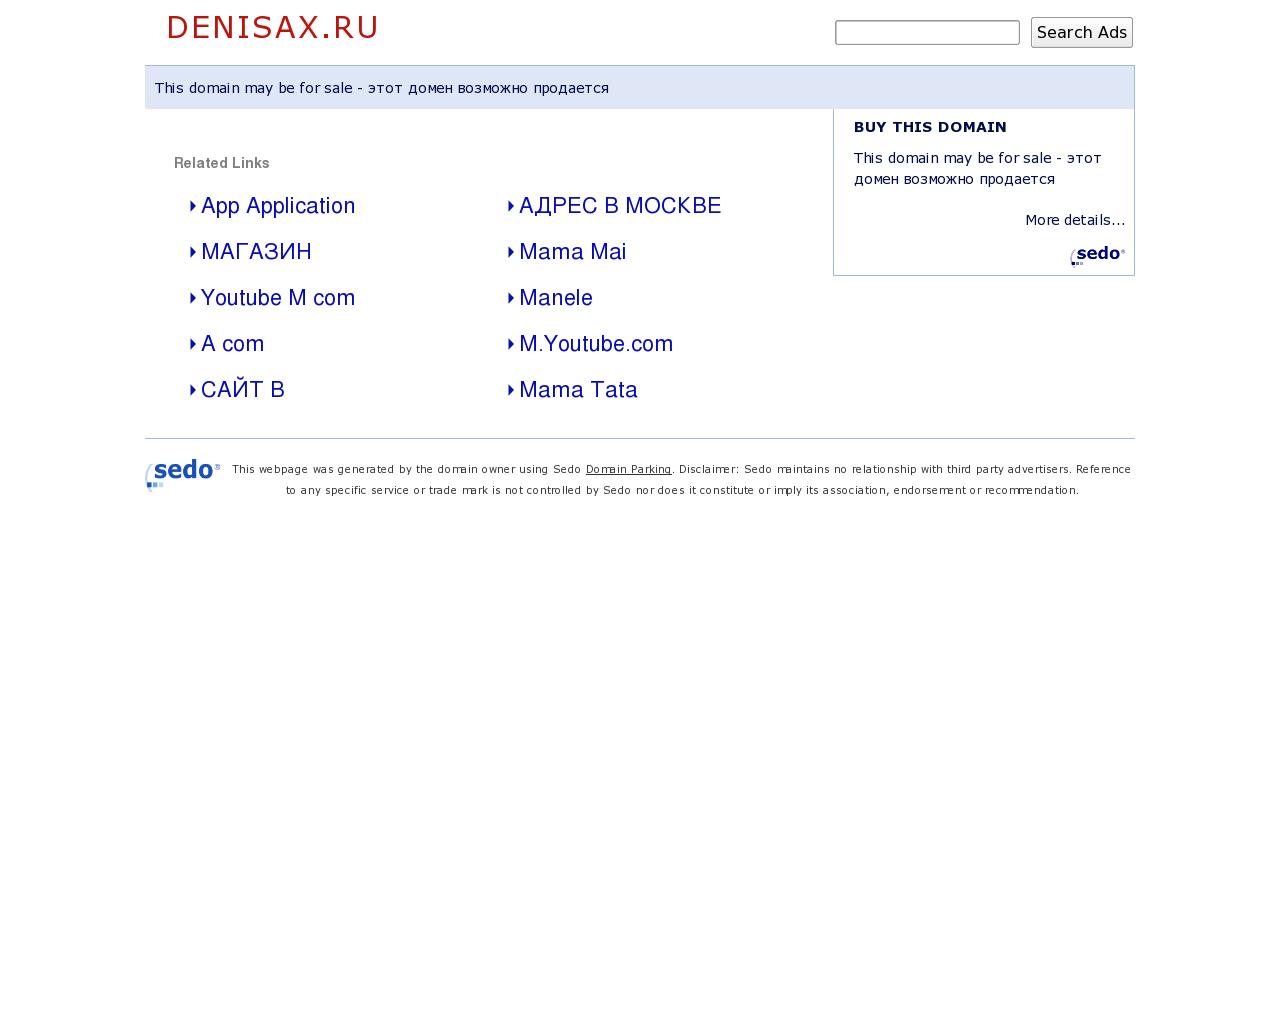 Изображение сайта denisax.ru в разрешении 1280x1024